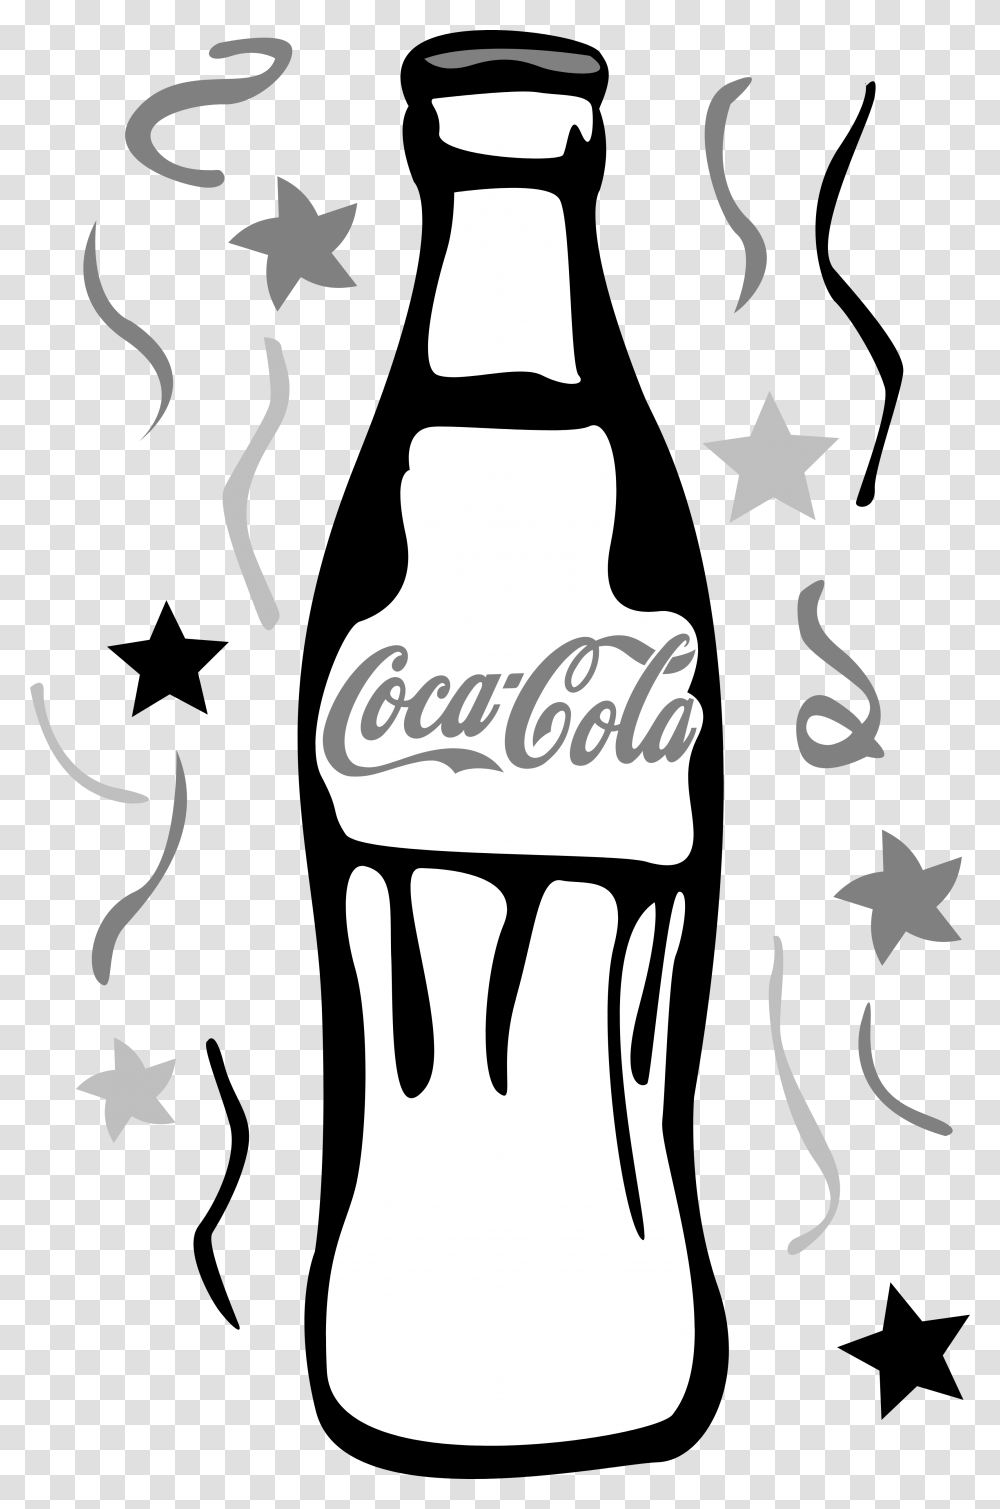 Coca Cola Logos Download, Coke, Beverage, Drink, Poster Transparent Png